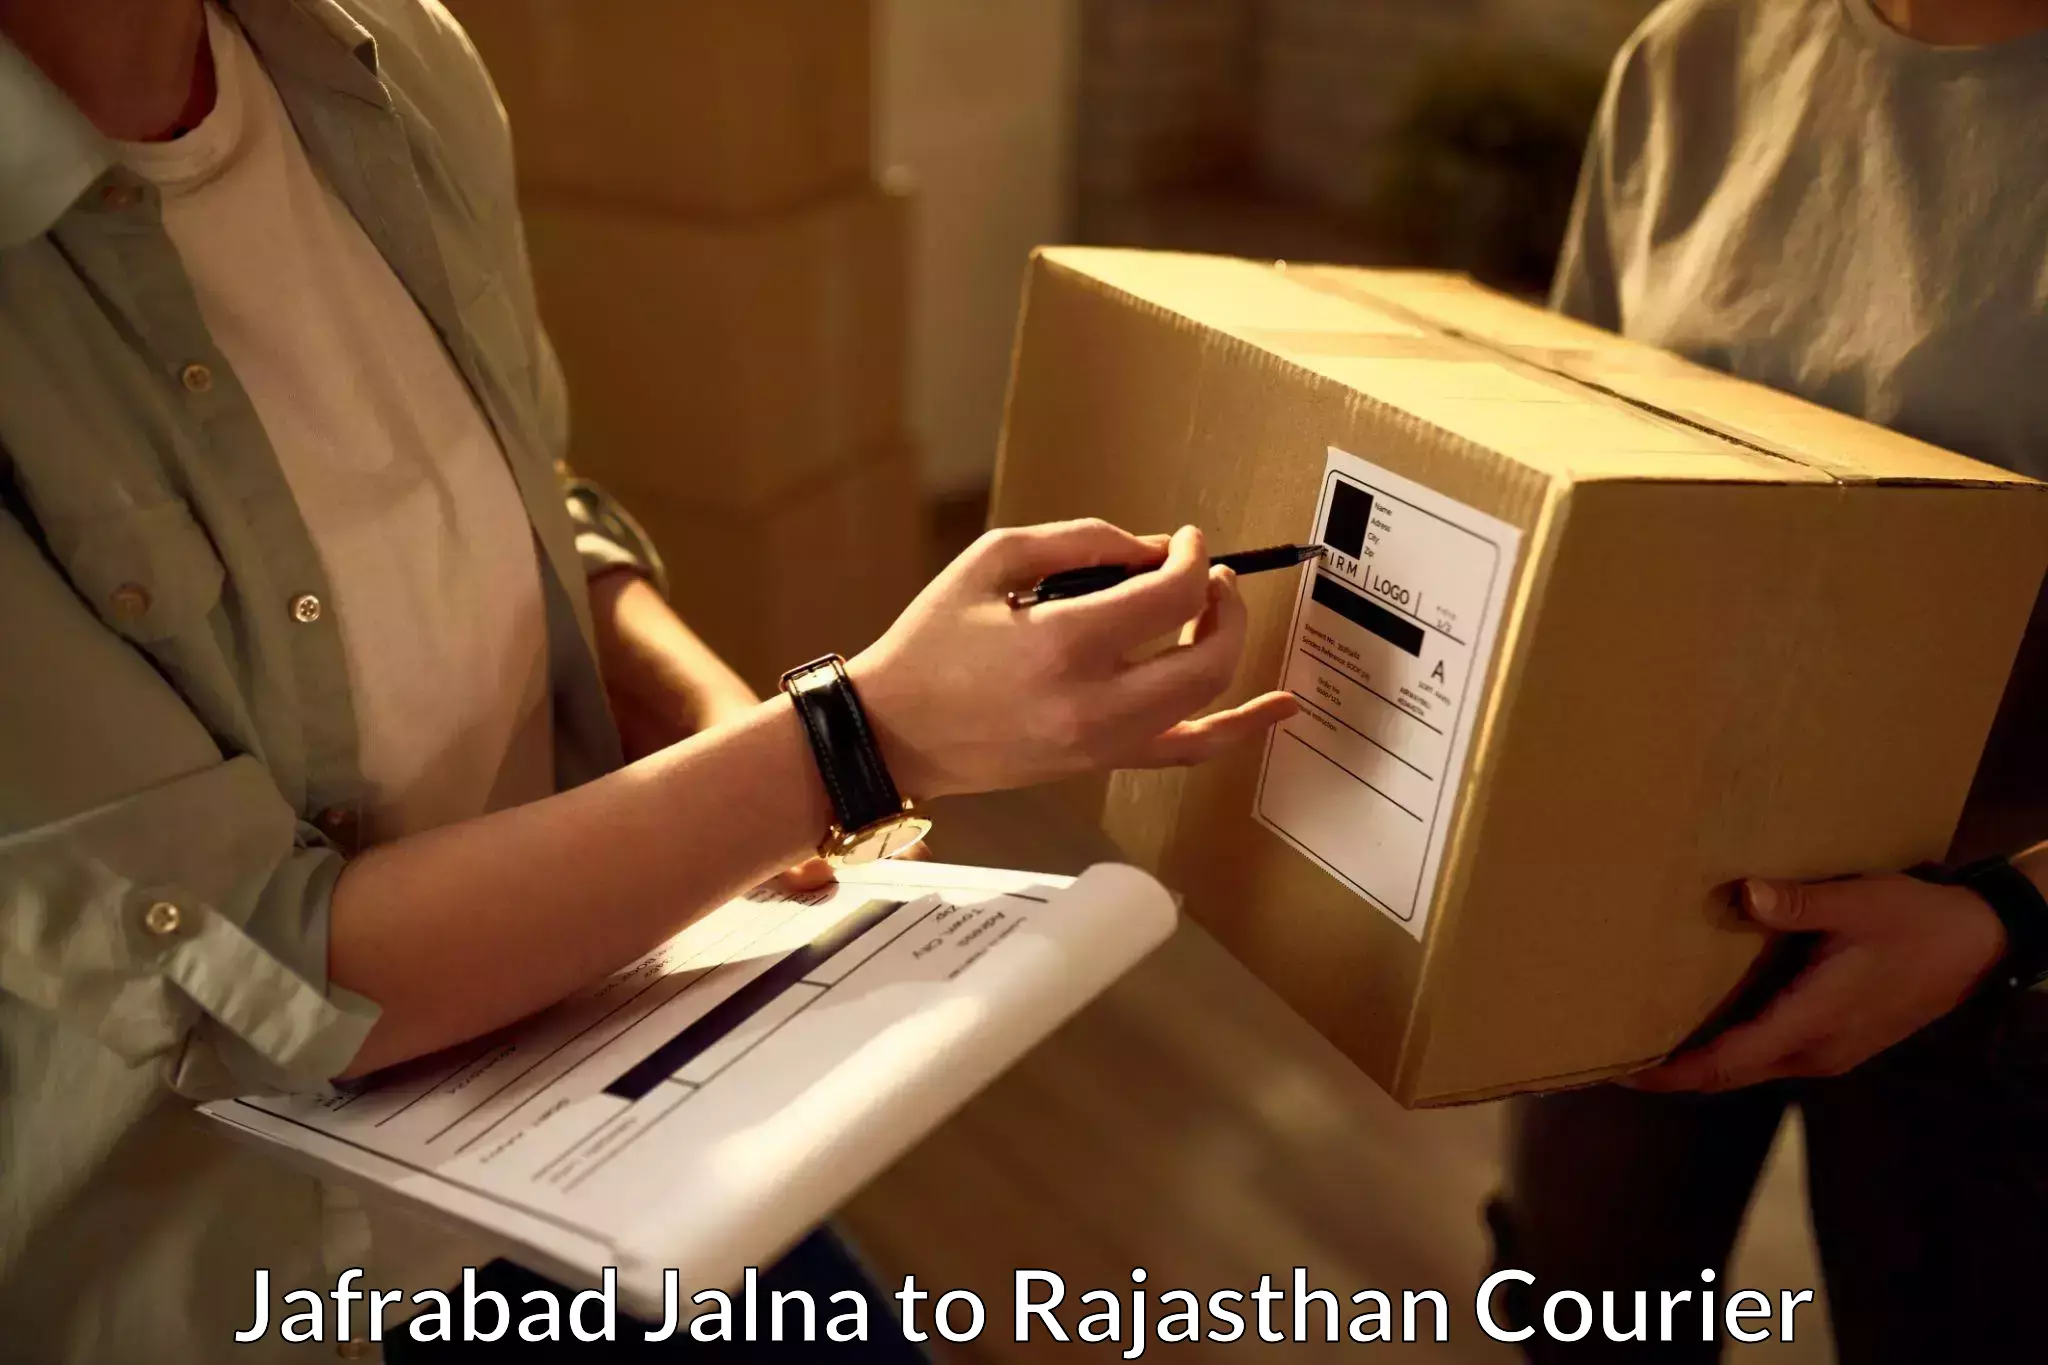 Easy return solutions Jafrabad Jalna to Ajmer